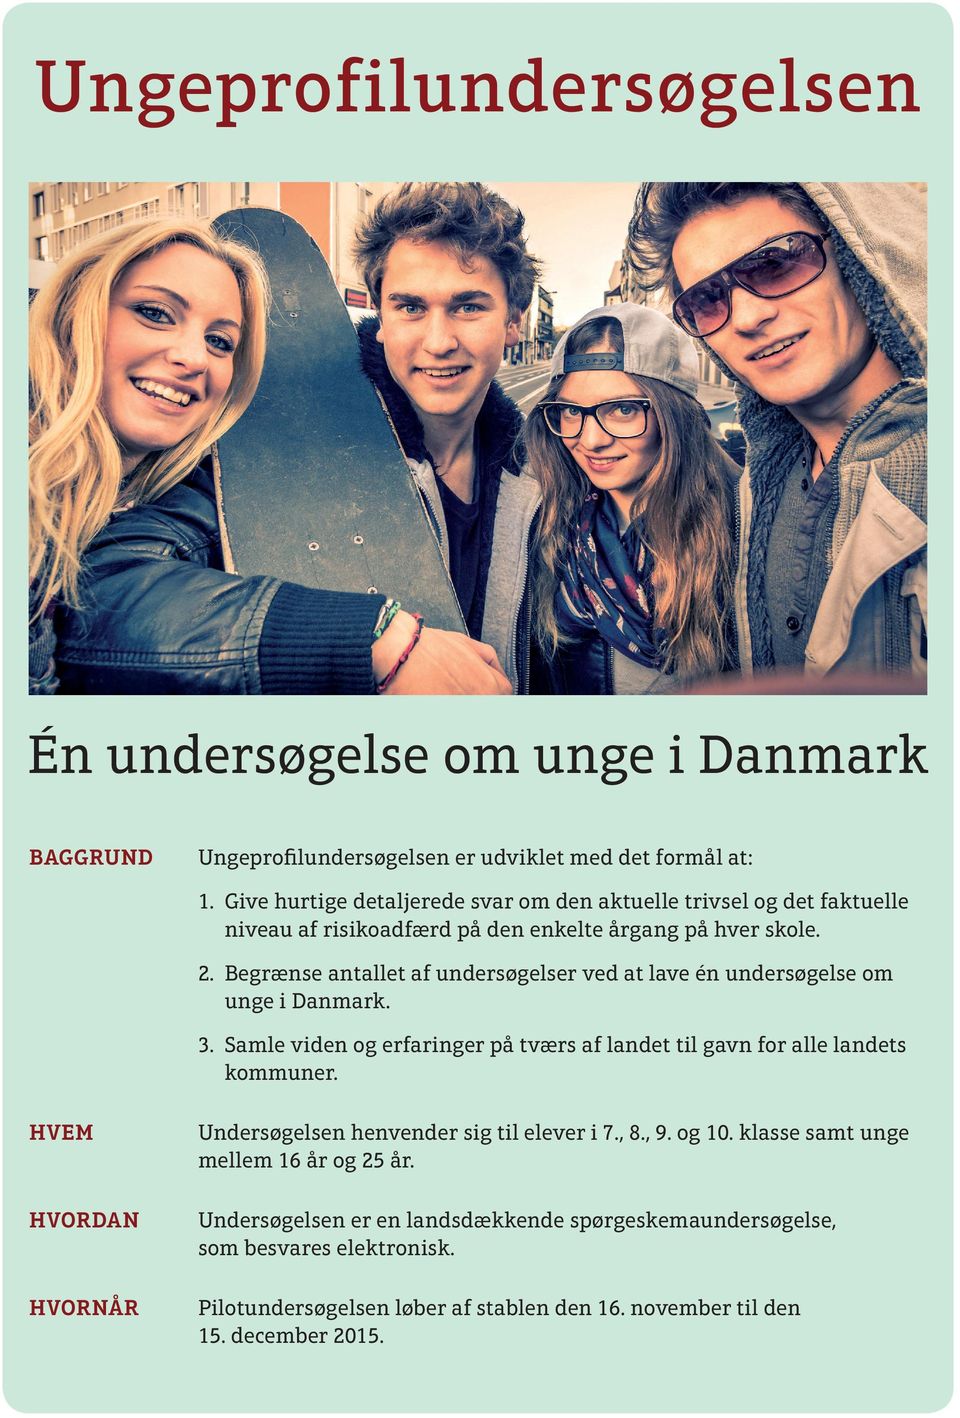 Begrænse antallet af undersøgelser ved at lave én undersøgelse om unge i Danmark. 3. Samle viden og erfaringer på tværs af landet til gavn for alle landets kommuner.